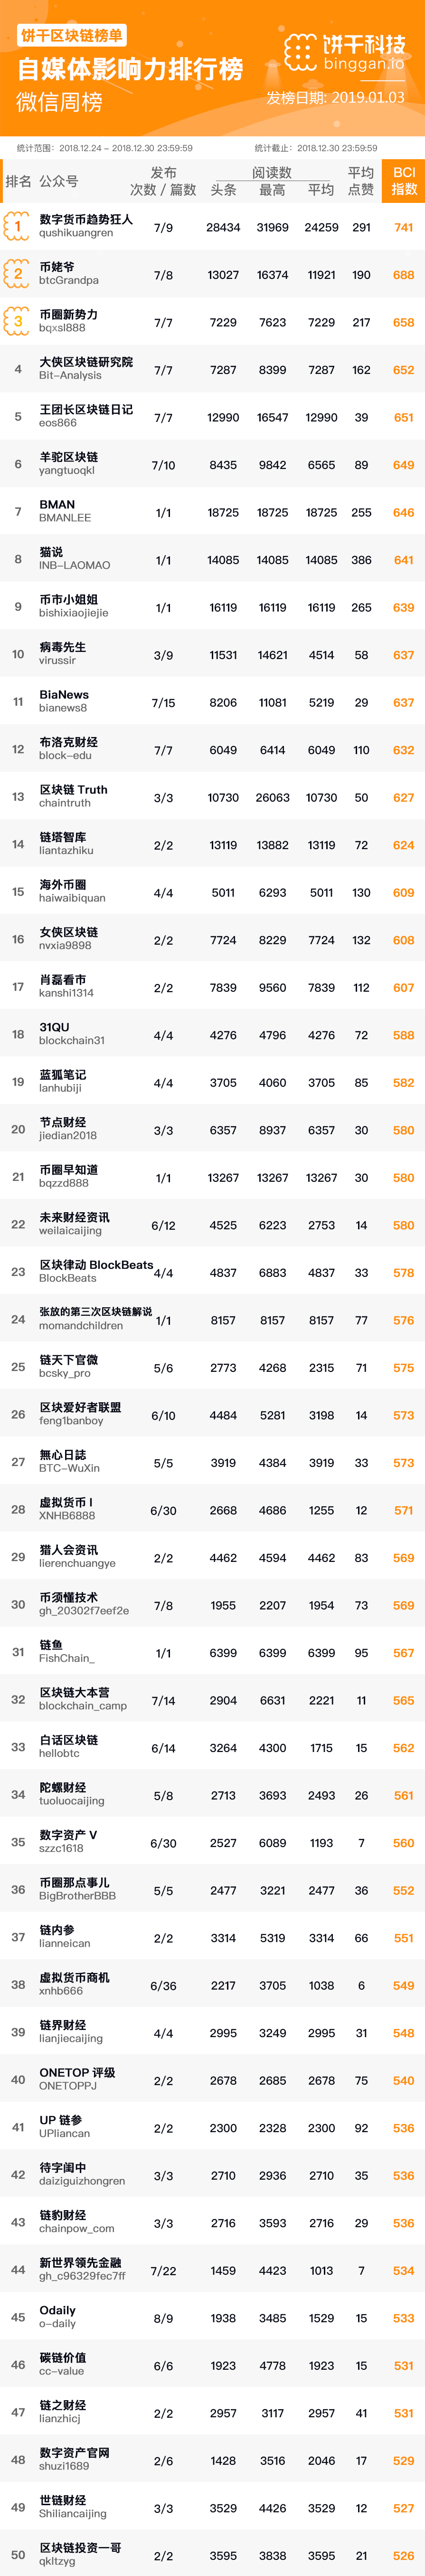 区块链自媒体排行榜TOP50(12.24-12.30)